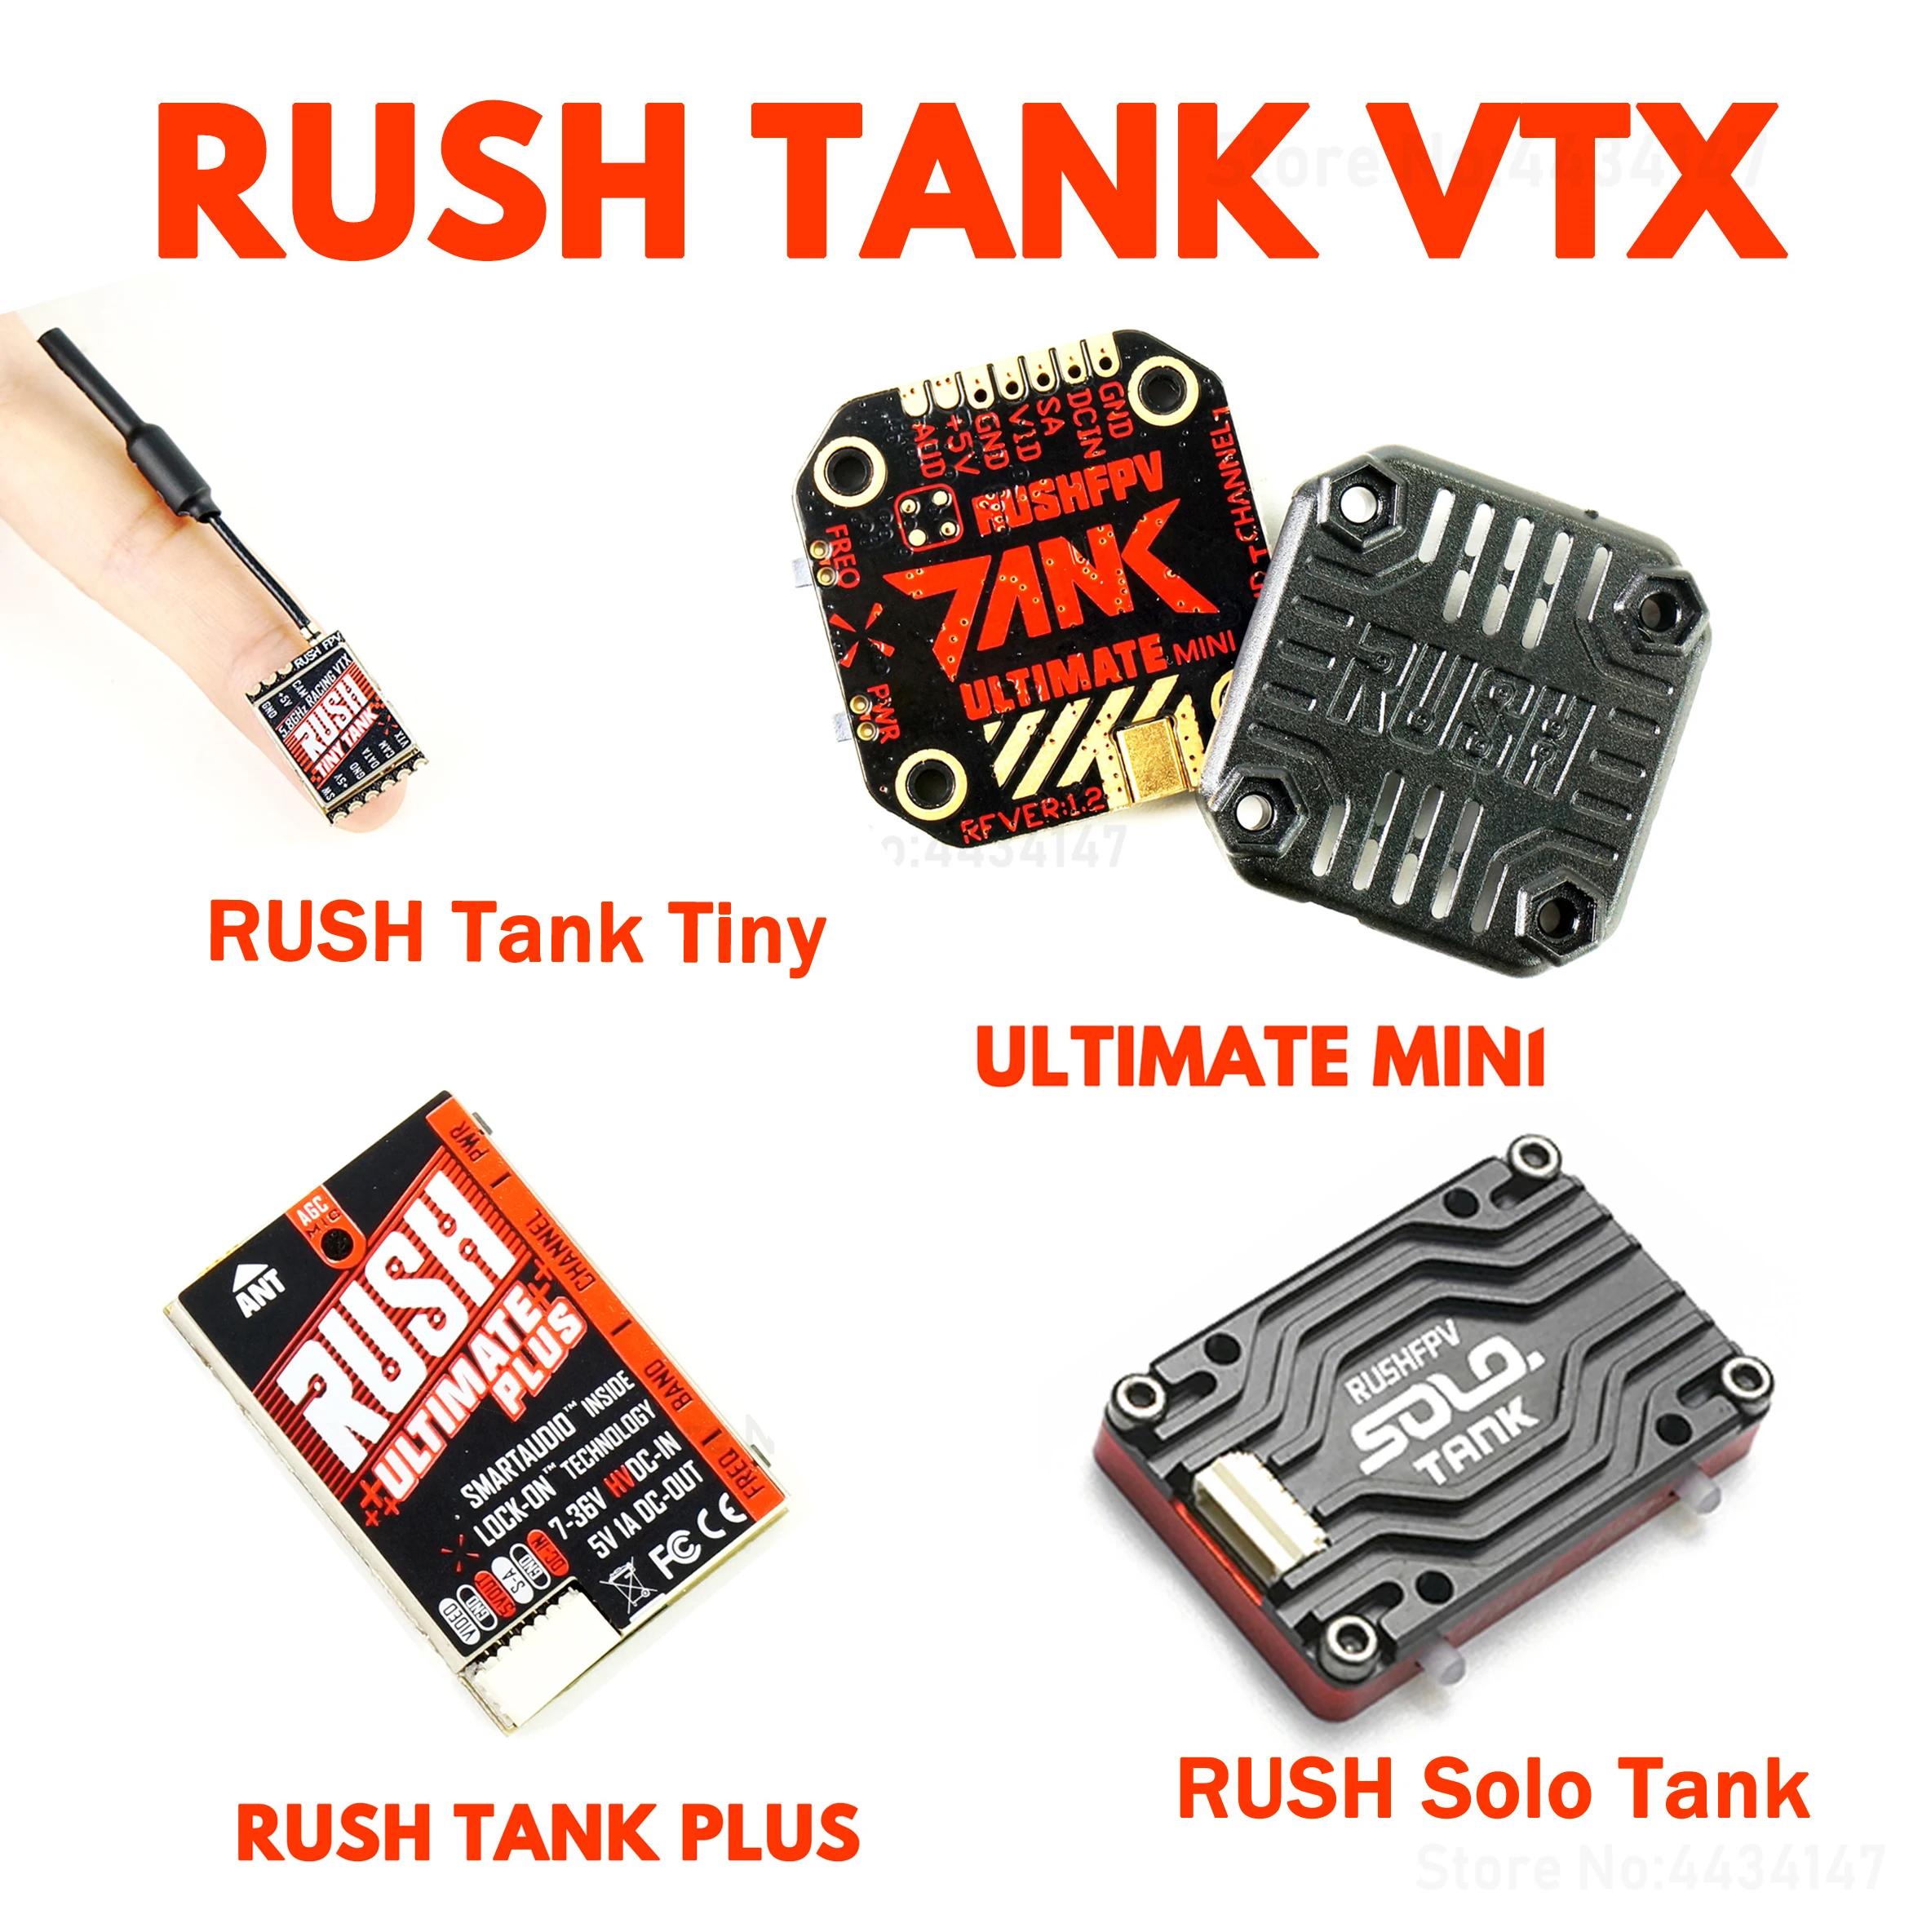 Rush tank solo. Rush Tank Ultimate Mini. Rush Tank Ultimate VTX SMARTAUDIO. Rush solo Tank VTX. Rush solo Tank 5.8g VTX.